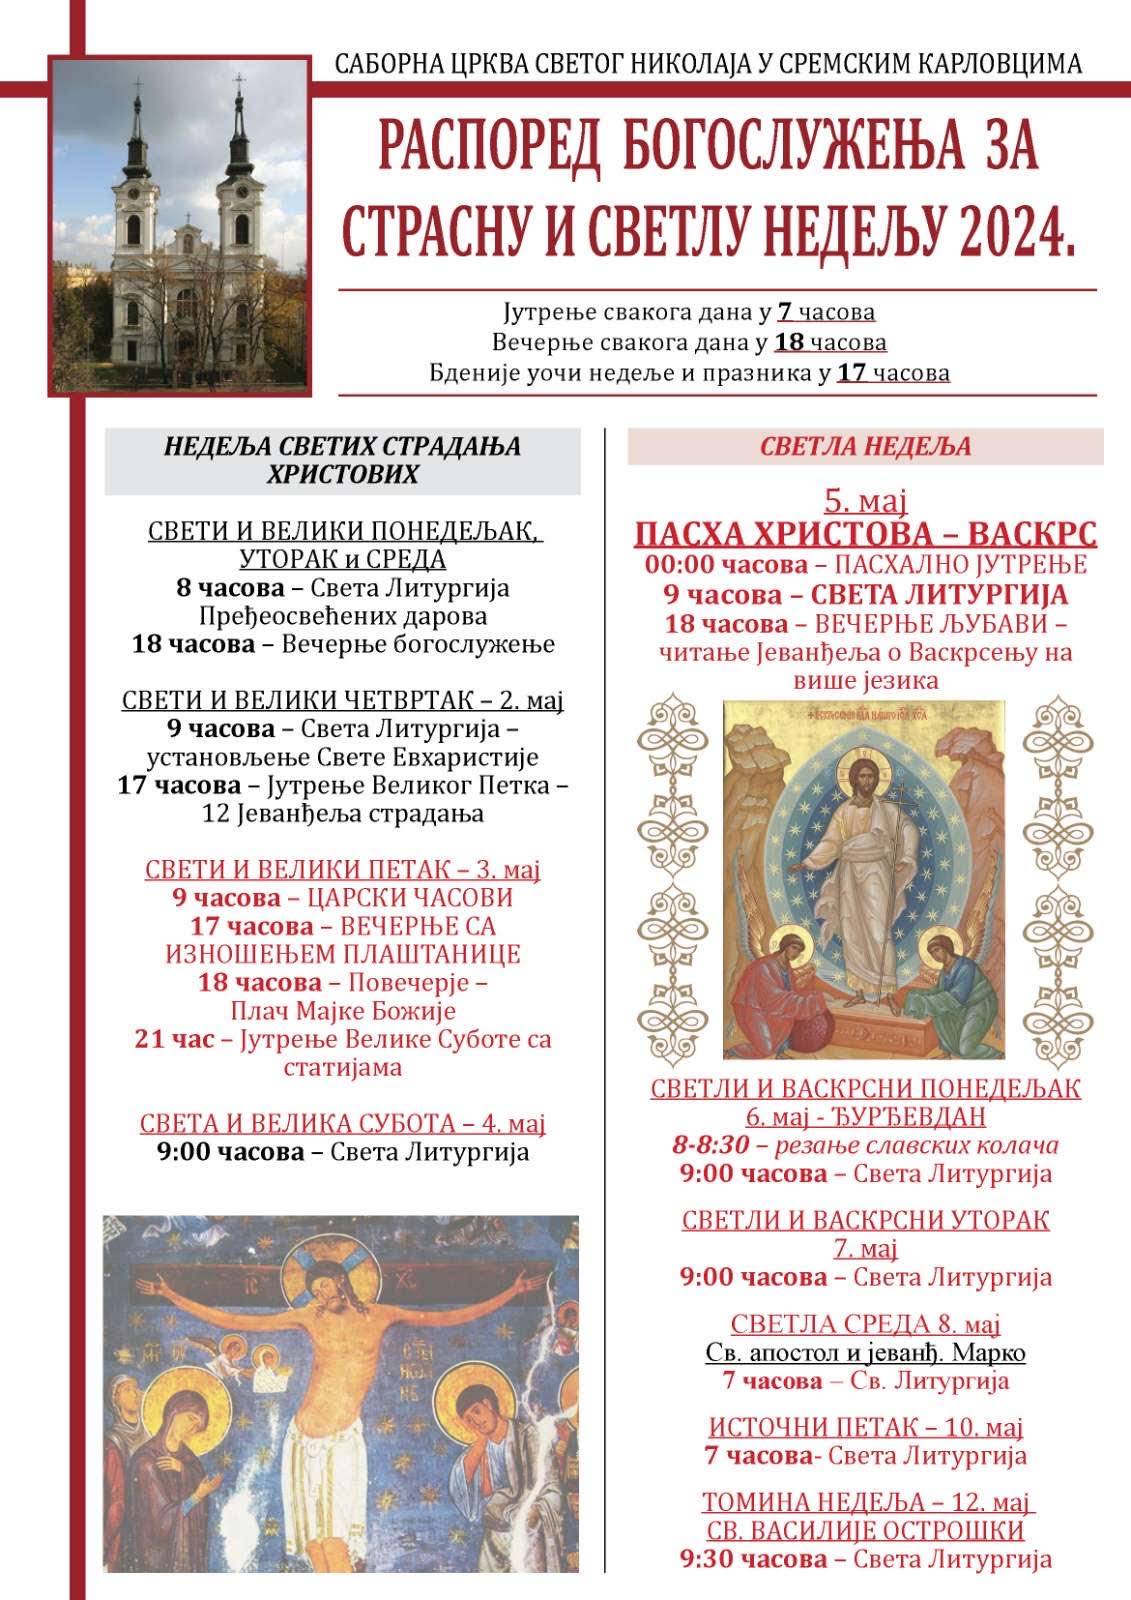 Распоред богослужења за Страсну и Светлу недељу 2024. године у Саборном храму Светог оца Николаја у Сремским Карловцима